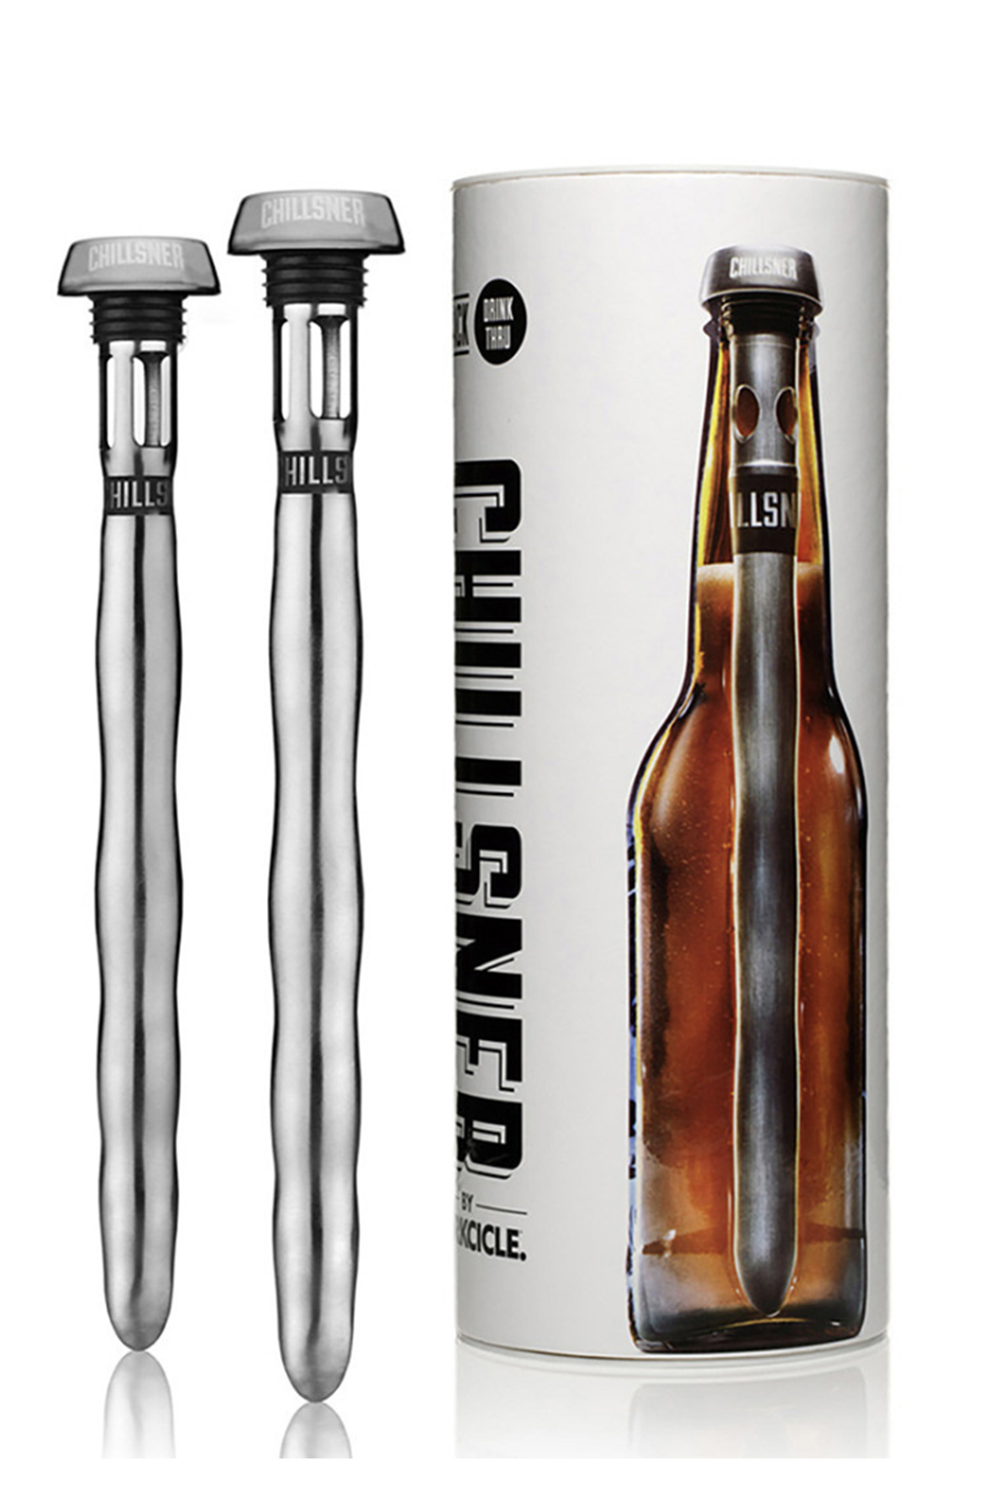 Cork Genius Beer Bottle Chiller Sticks, 2 Pack Stainless Steel Cooler Rods  for Instant Cold Beverages